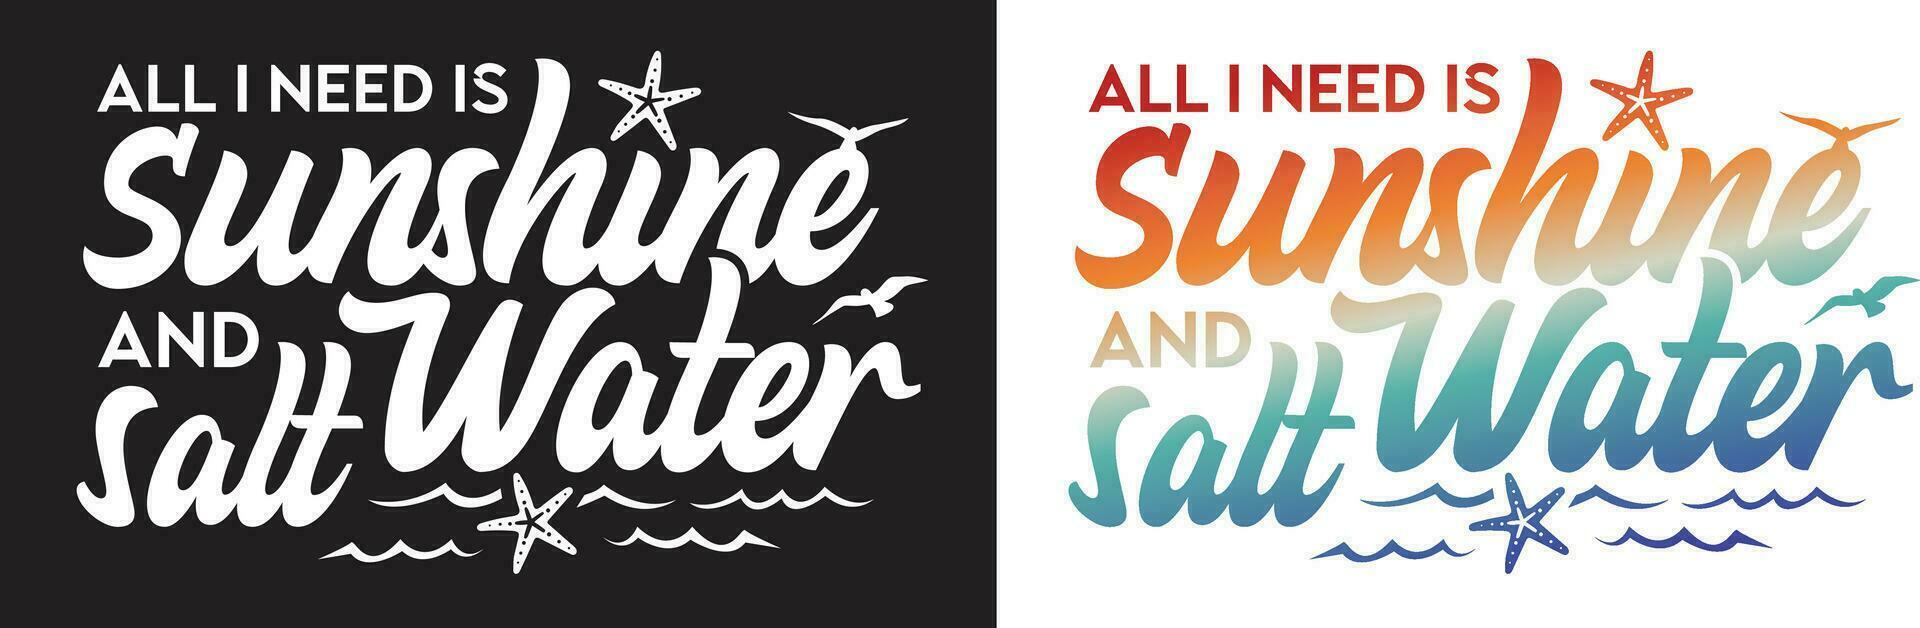 todas yo necesitar es Brillo Solar y agua salada. rodeado por estrellas de mar, ondas, y pájaros.tipografia letras diseño. vector